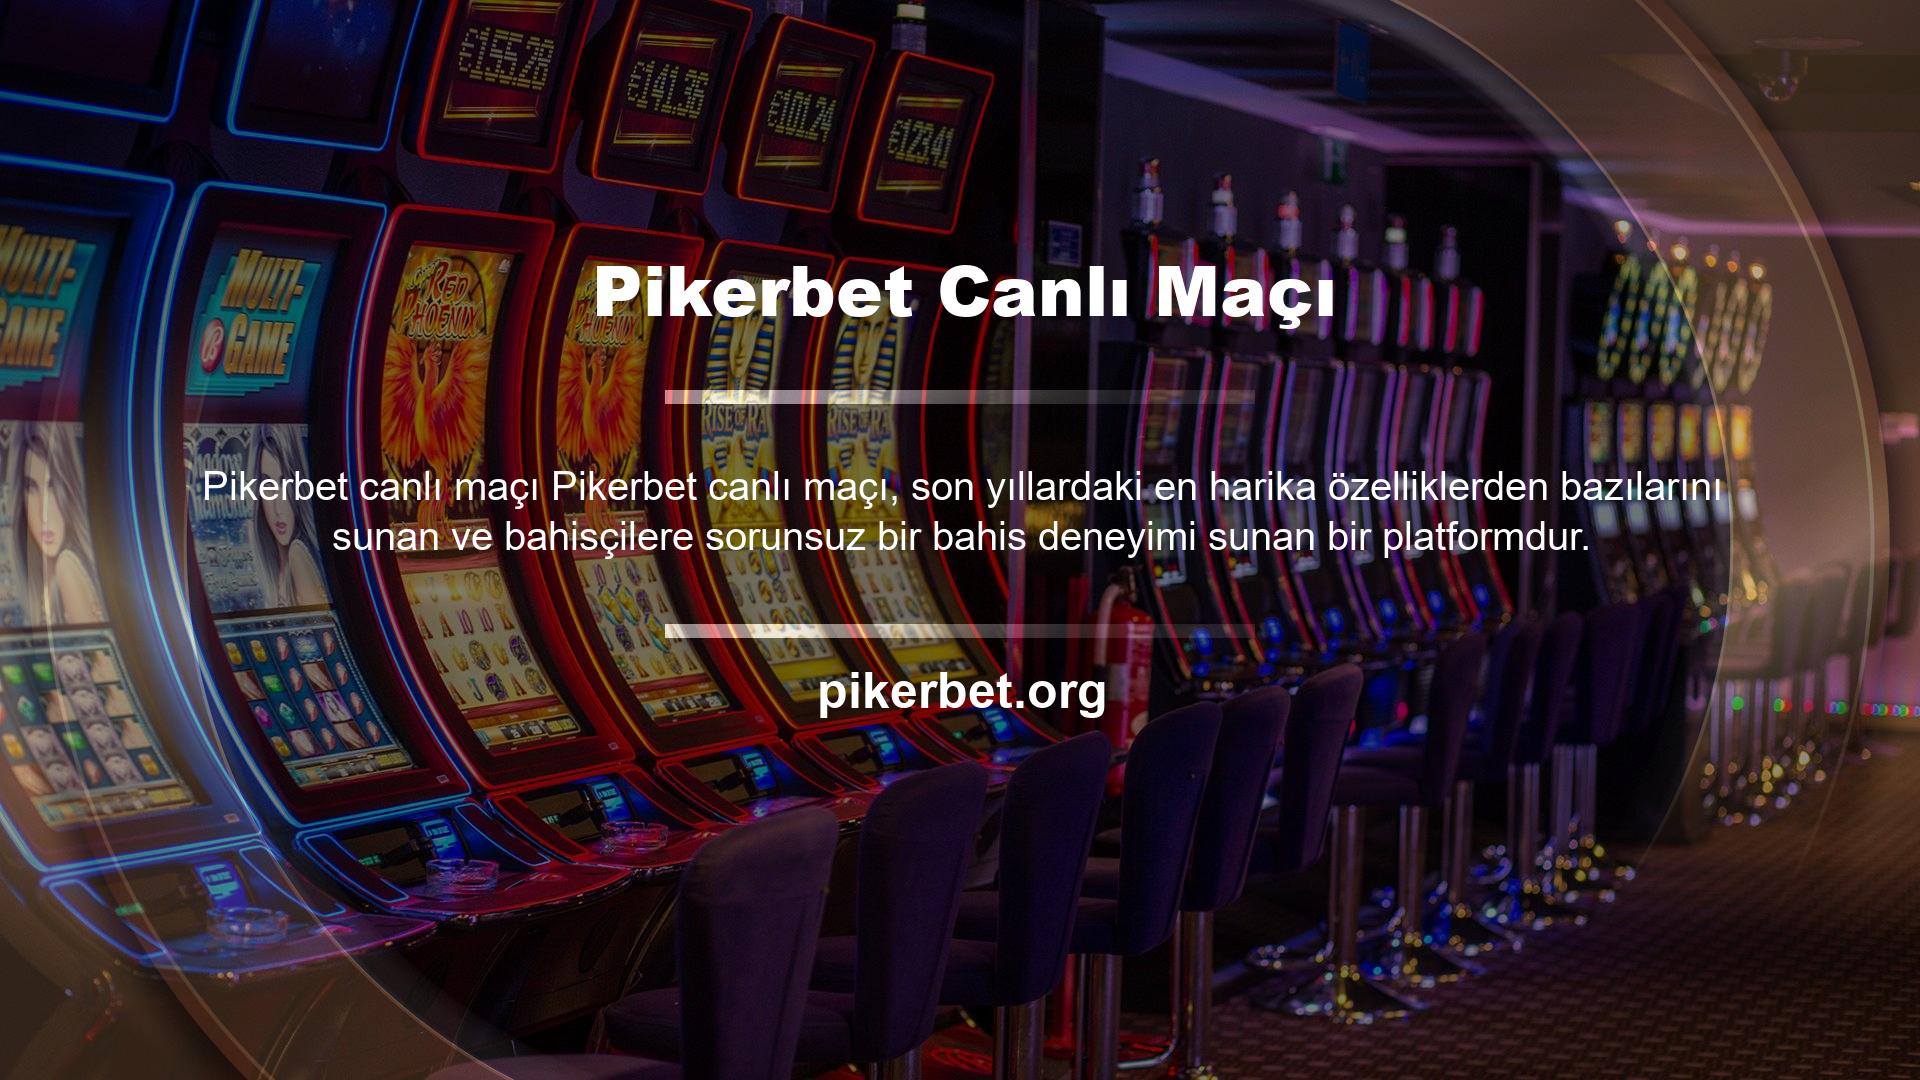 Pikerbet, resmi web sitesinde canlı spor, canlı casino ve diğer oyunları sunmaktadır